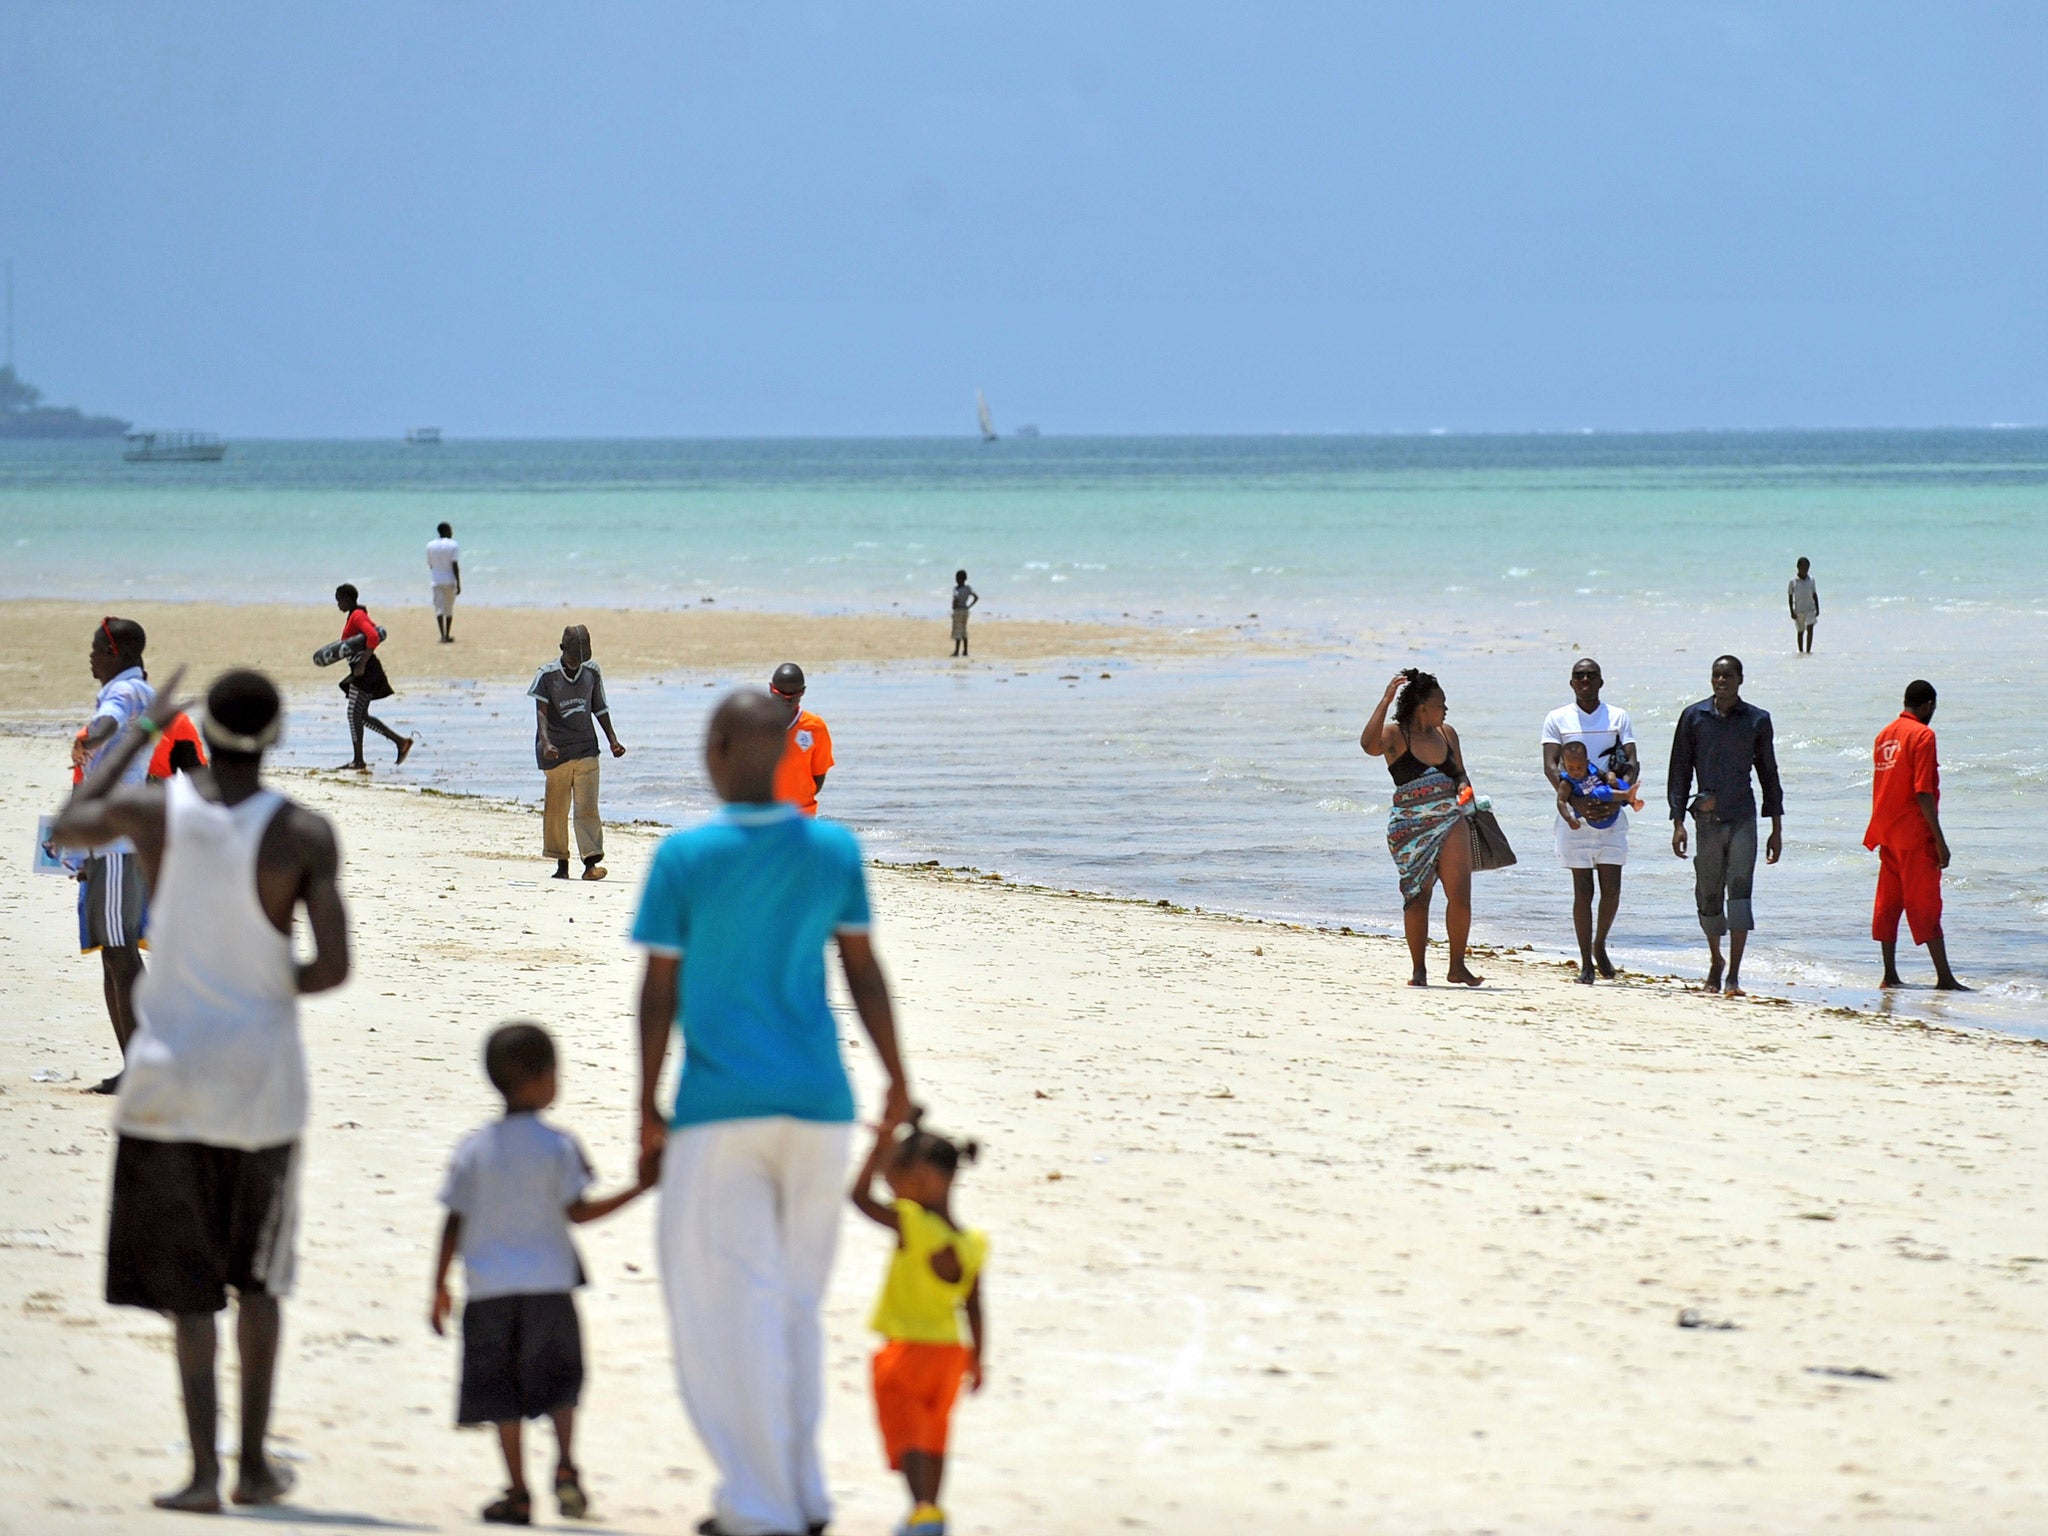 The Kenyatta public beach in Mombasa